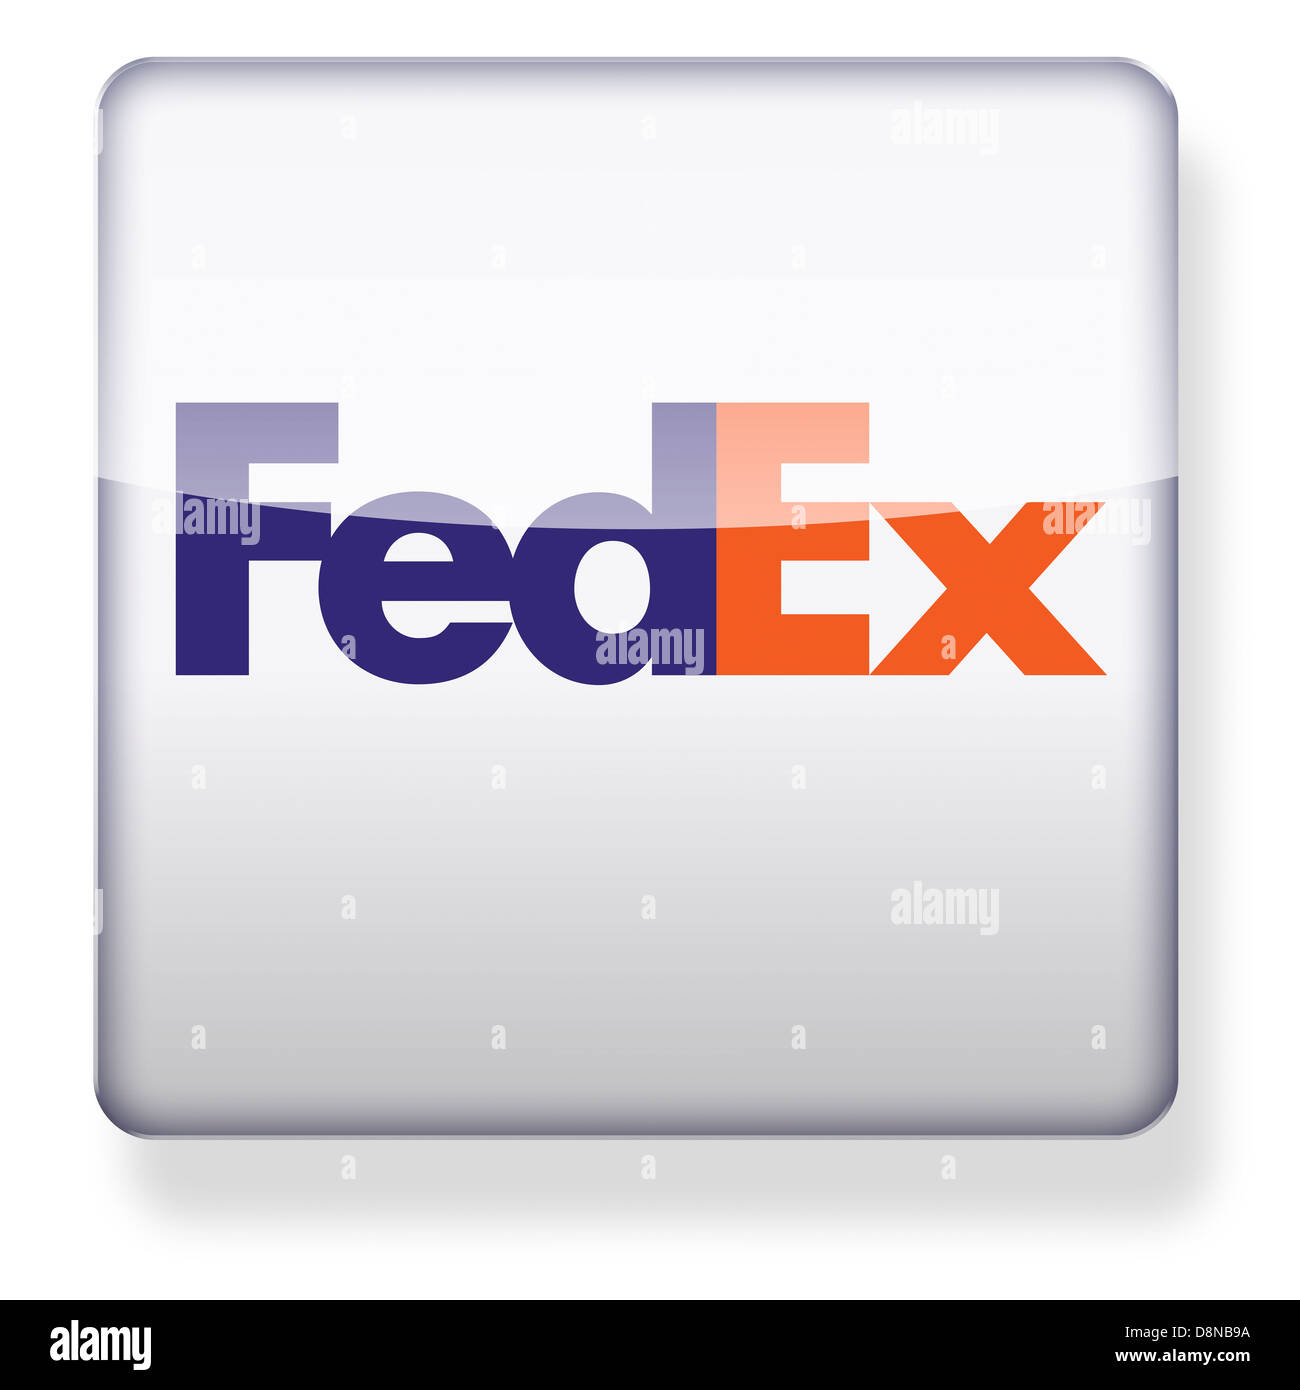 Logo Fedex come l'icona di un'app. Percorso di clipping incluso. Foto Stock